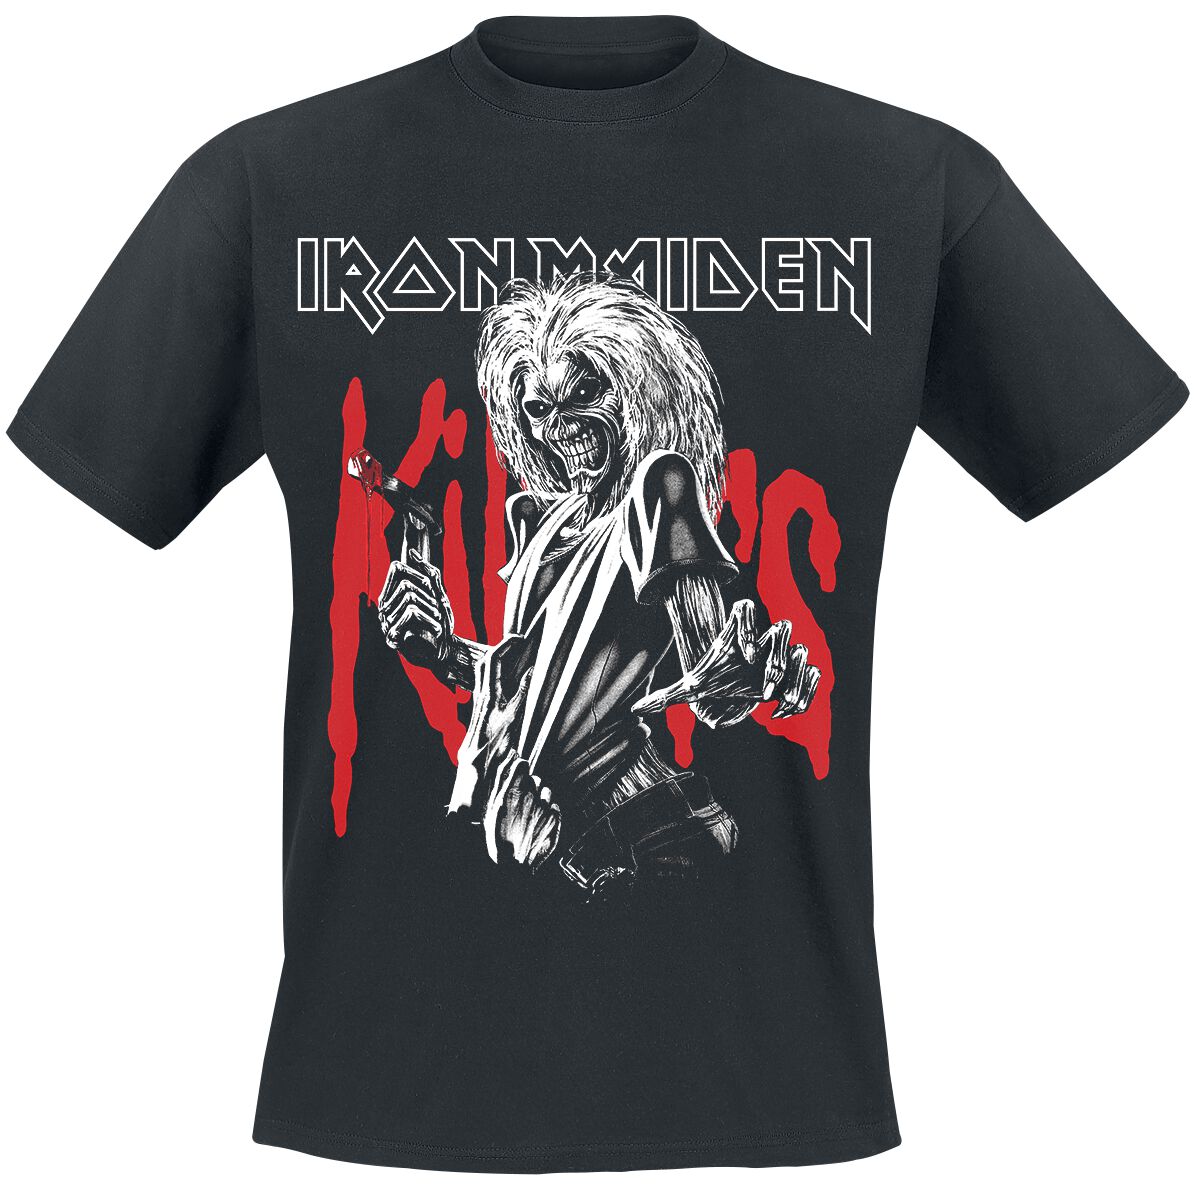 Iron Maiden T-Shirt - Killers Eddie Large Graphic - S bis 3XL - für Männer - Größe M - schwarz  - Lizenziertes Merchandise!